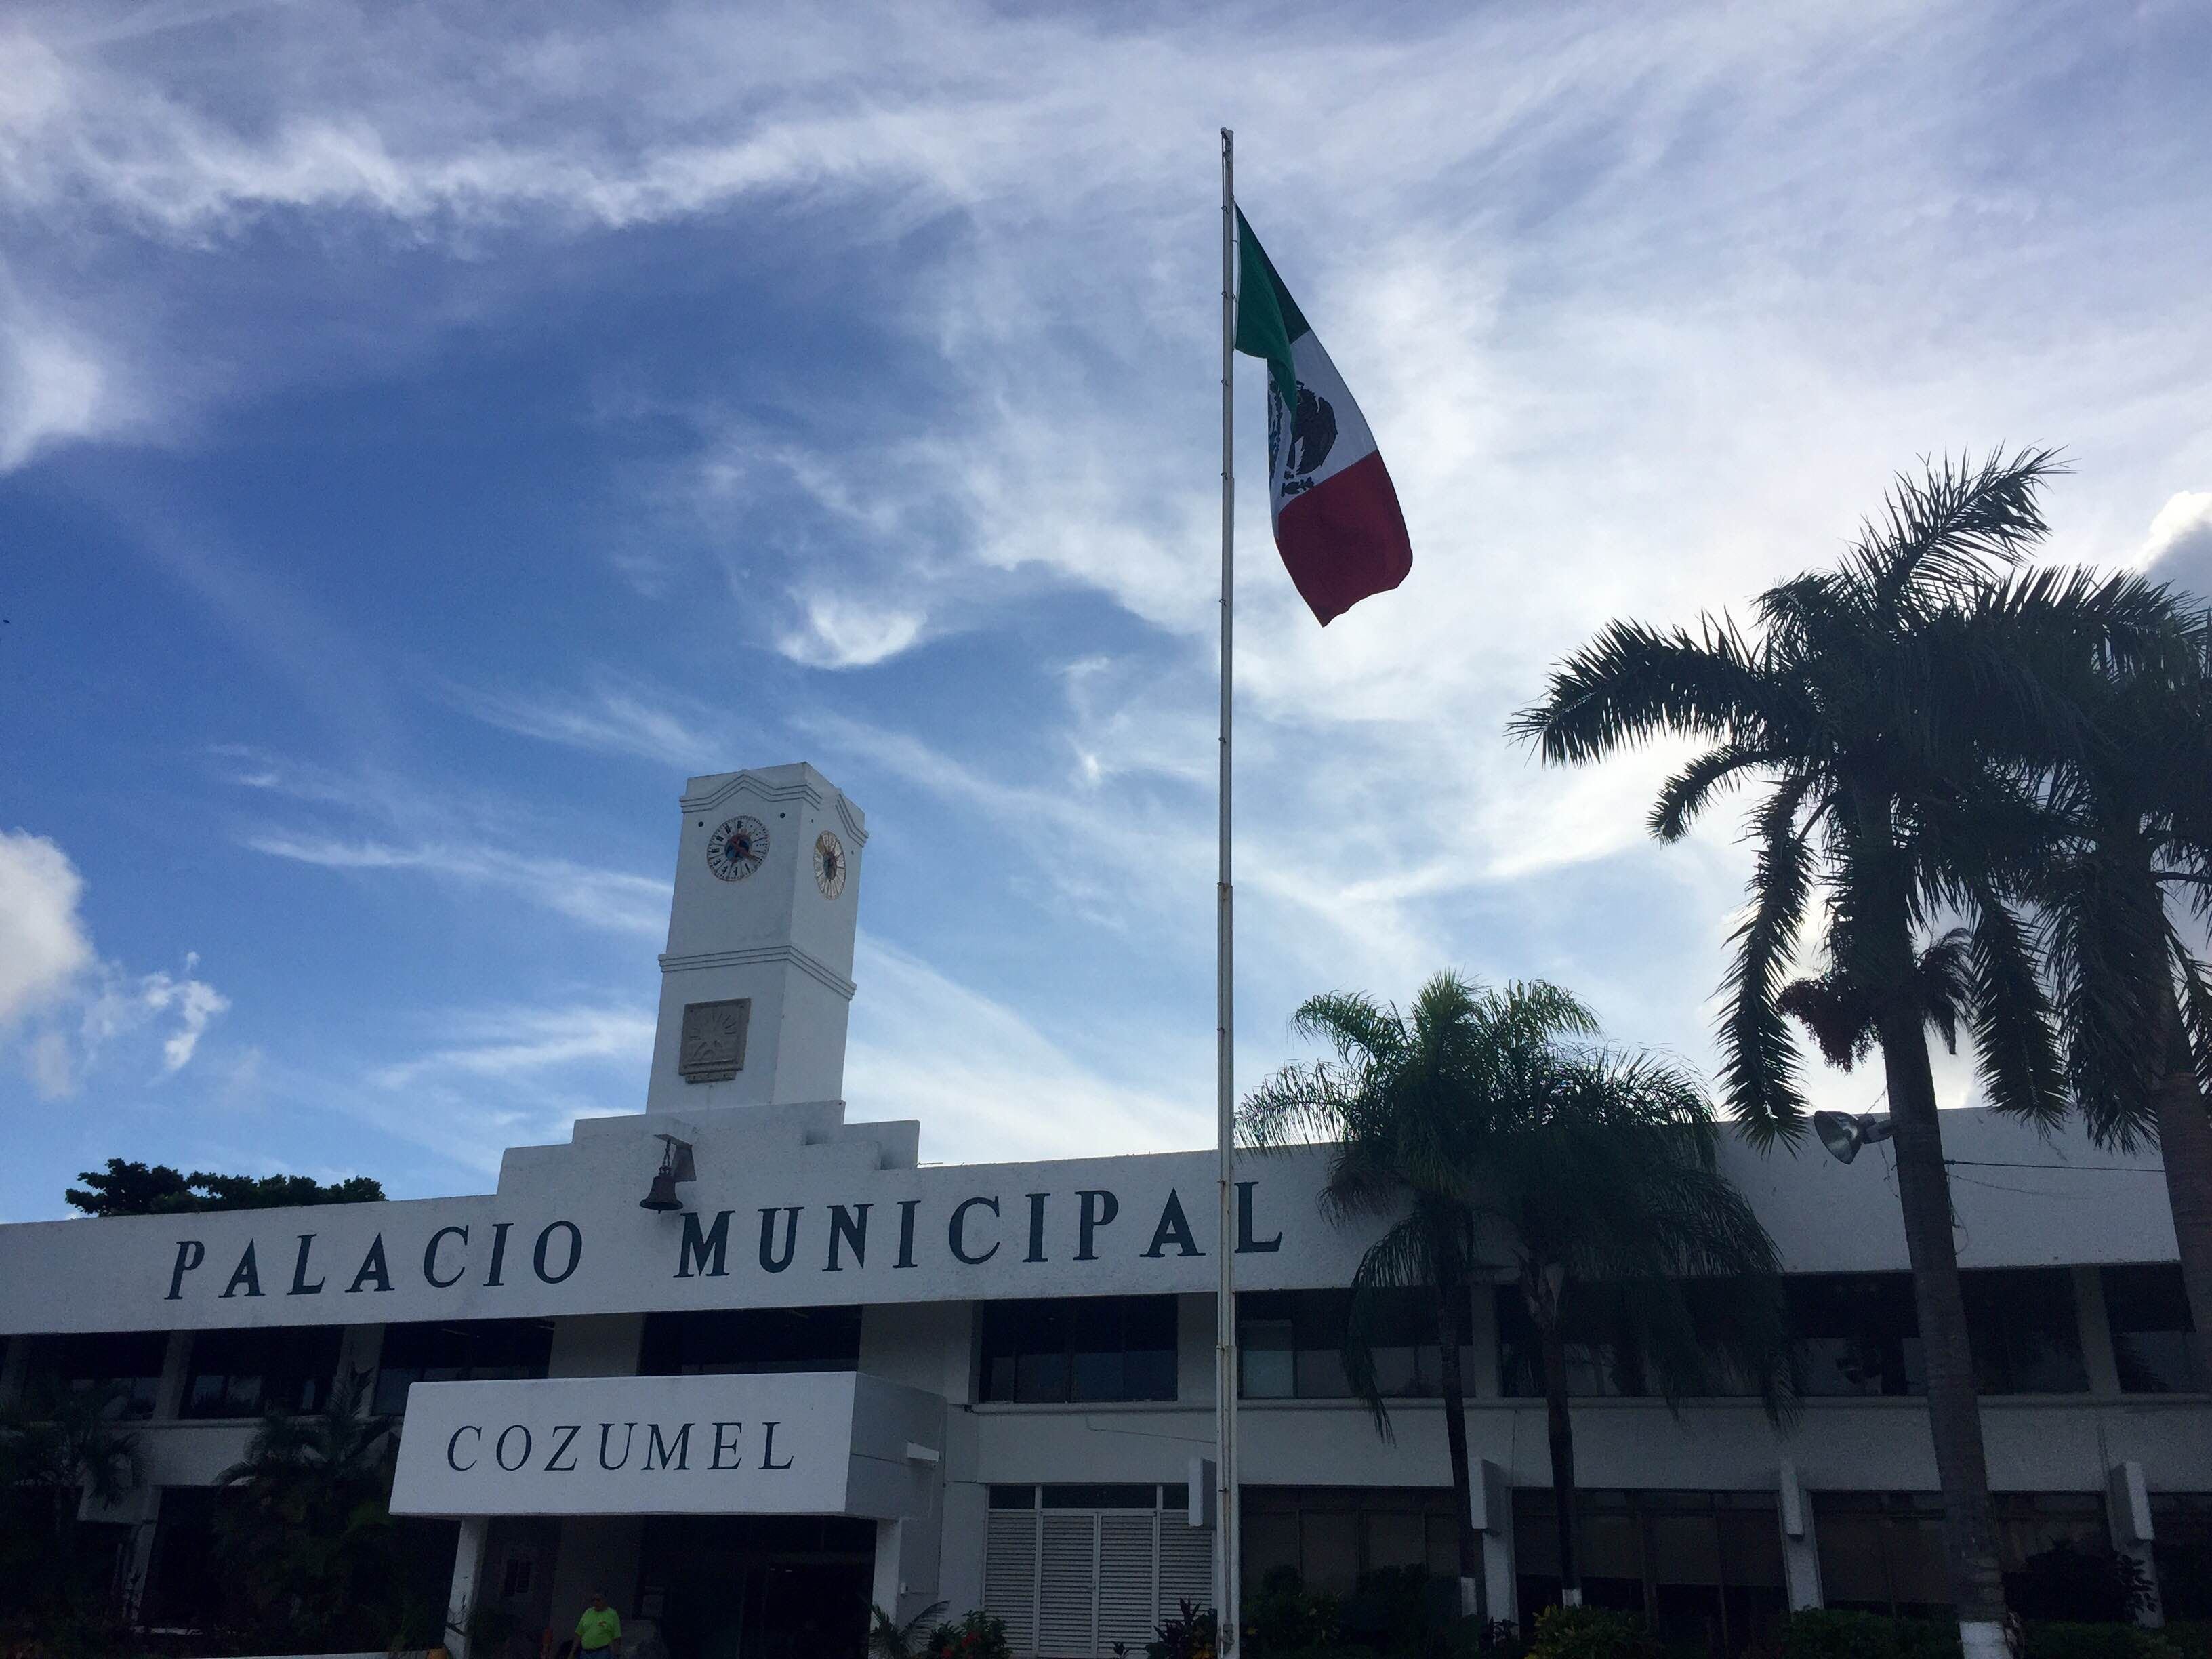 Palacio Municipal en Cozumel: 2 opiniones y 2 fotos